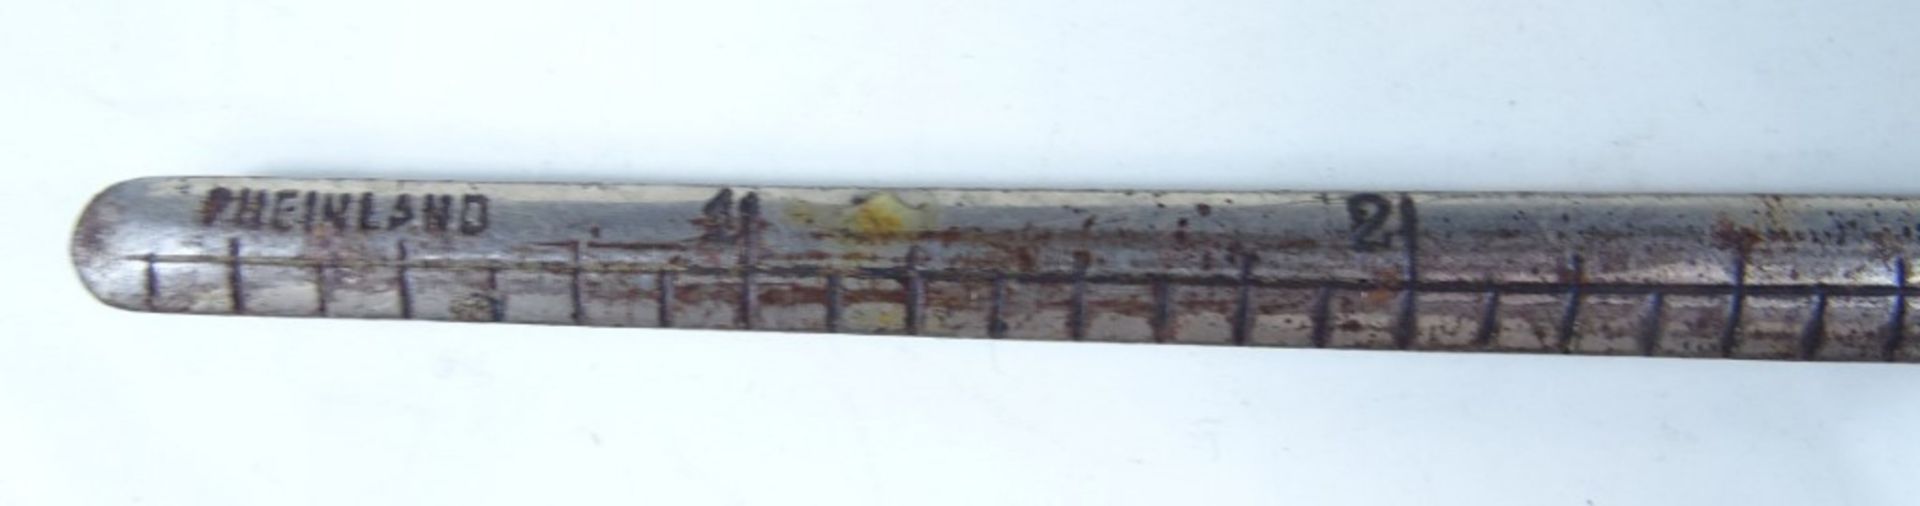 Brieföffner mit Maßstab, Metall, gepunzt "Rheinland", L. 25,5 cm - Bild 4 aus 5